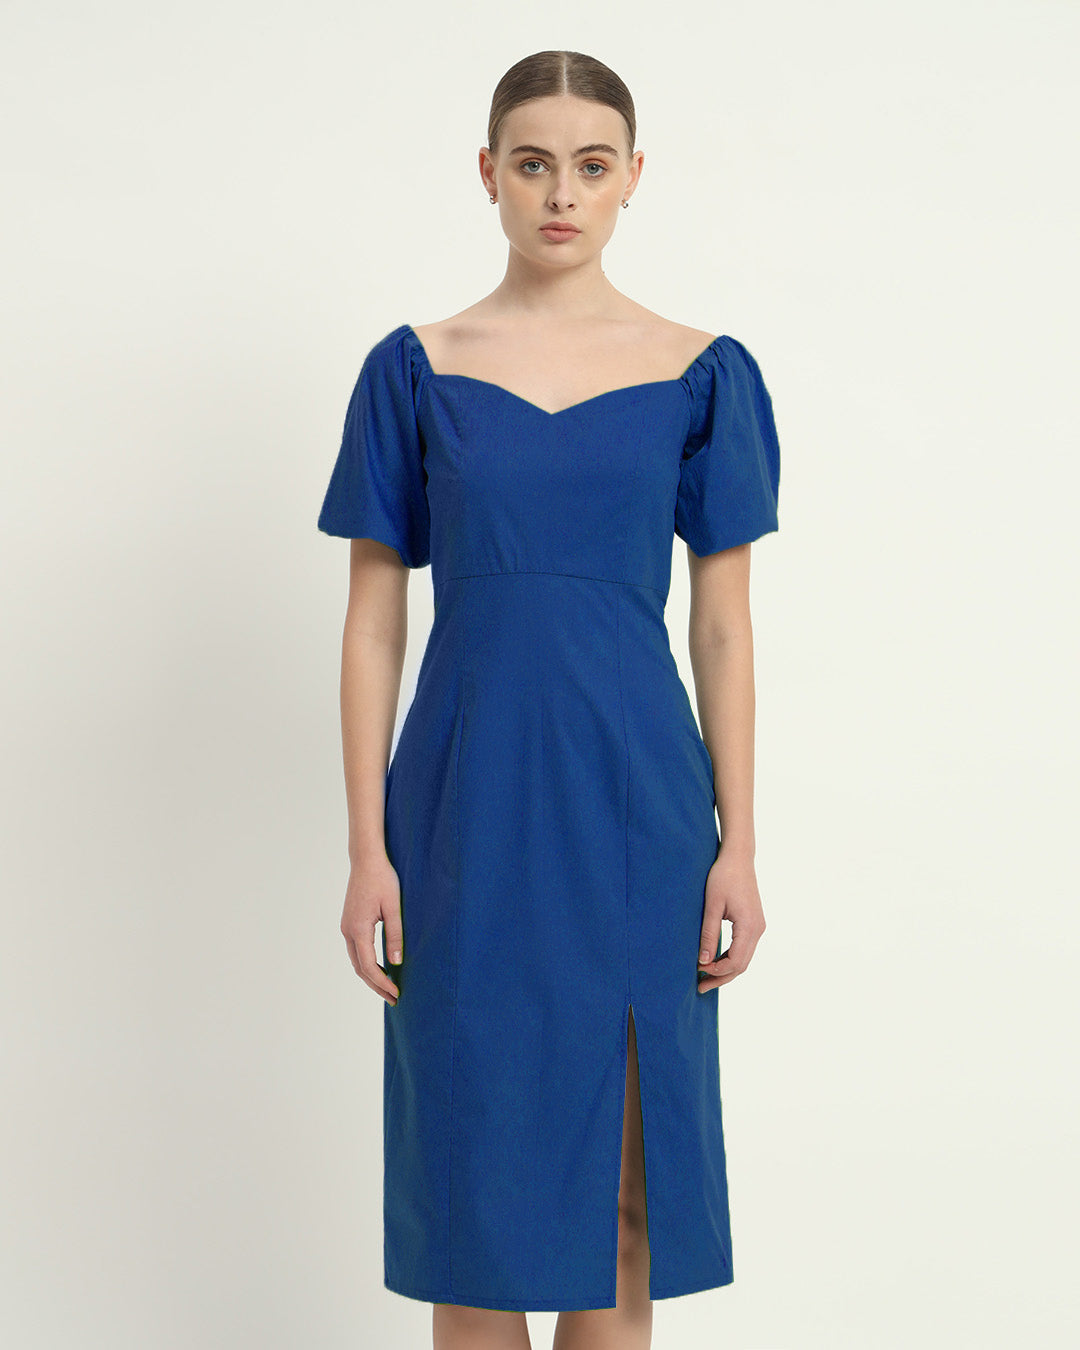 The Cobalt Erwin Cotton Dress